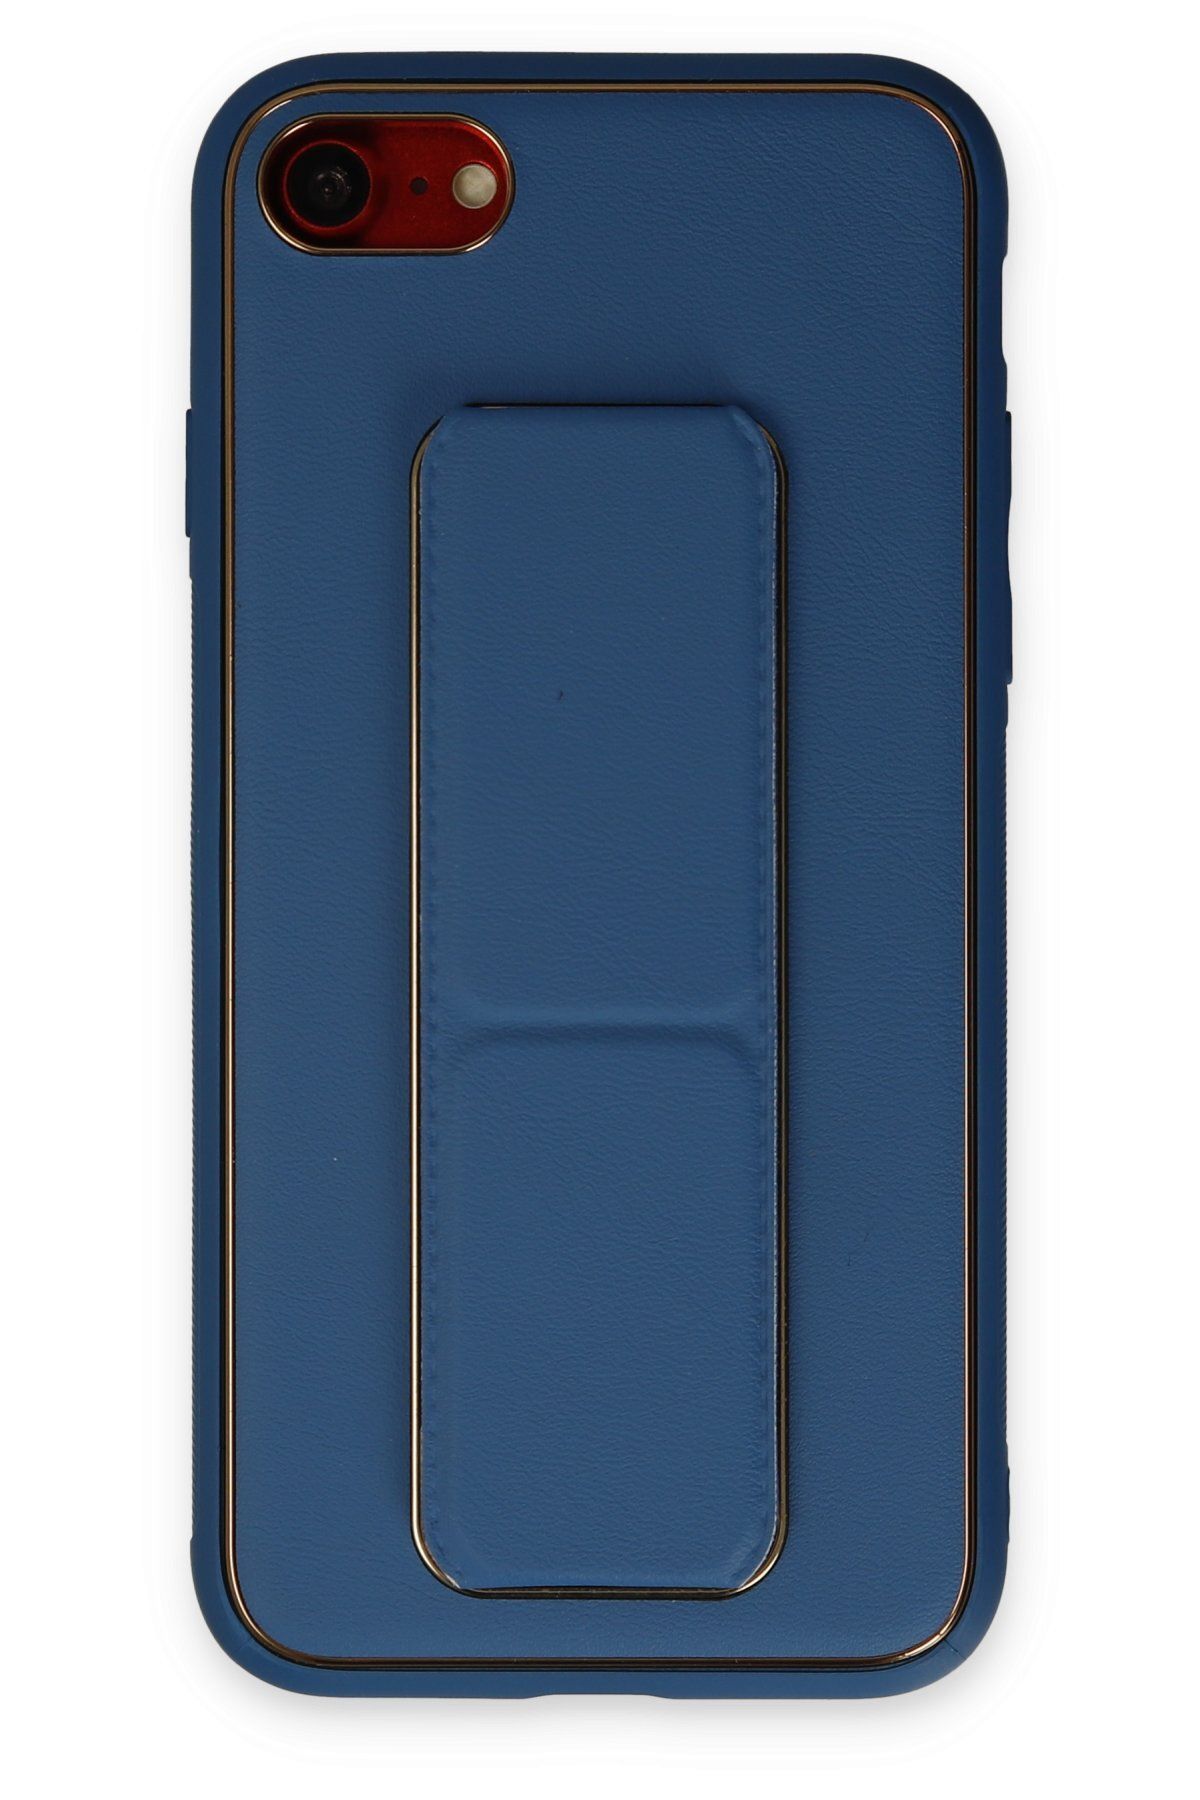 NewFace iPhone 8 Kılıf Coco Deri Standlı Kapak - Açık Mavi 374113